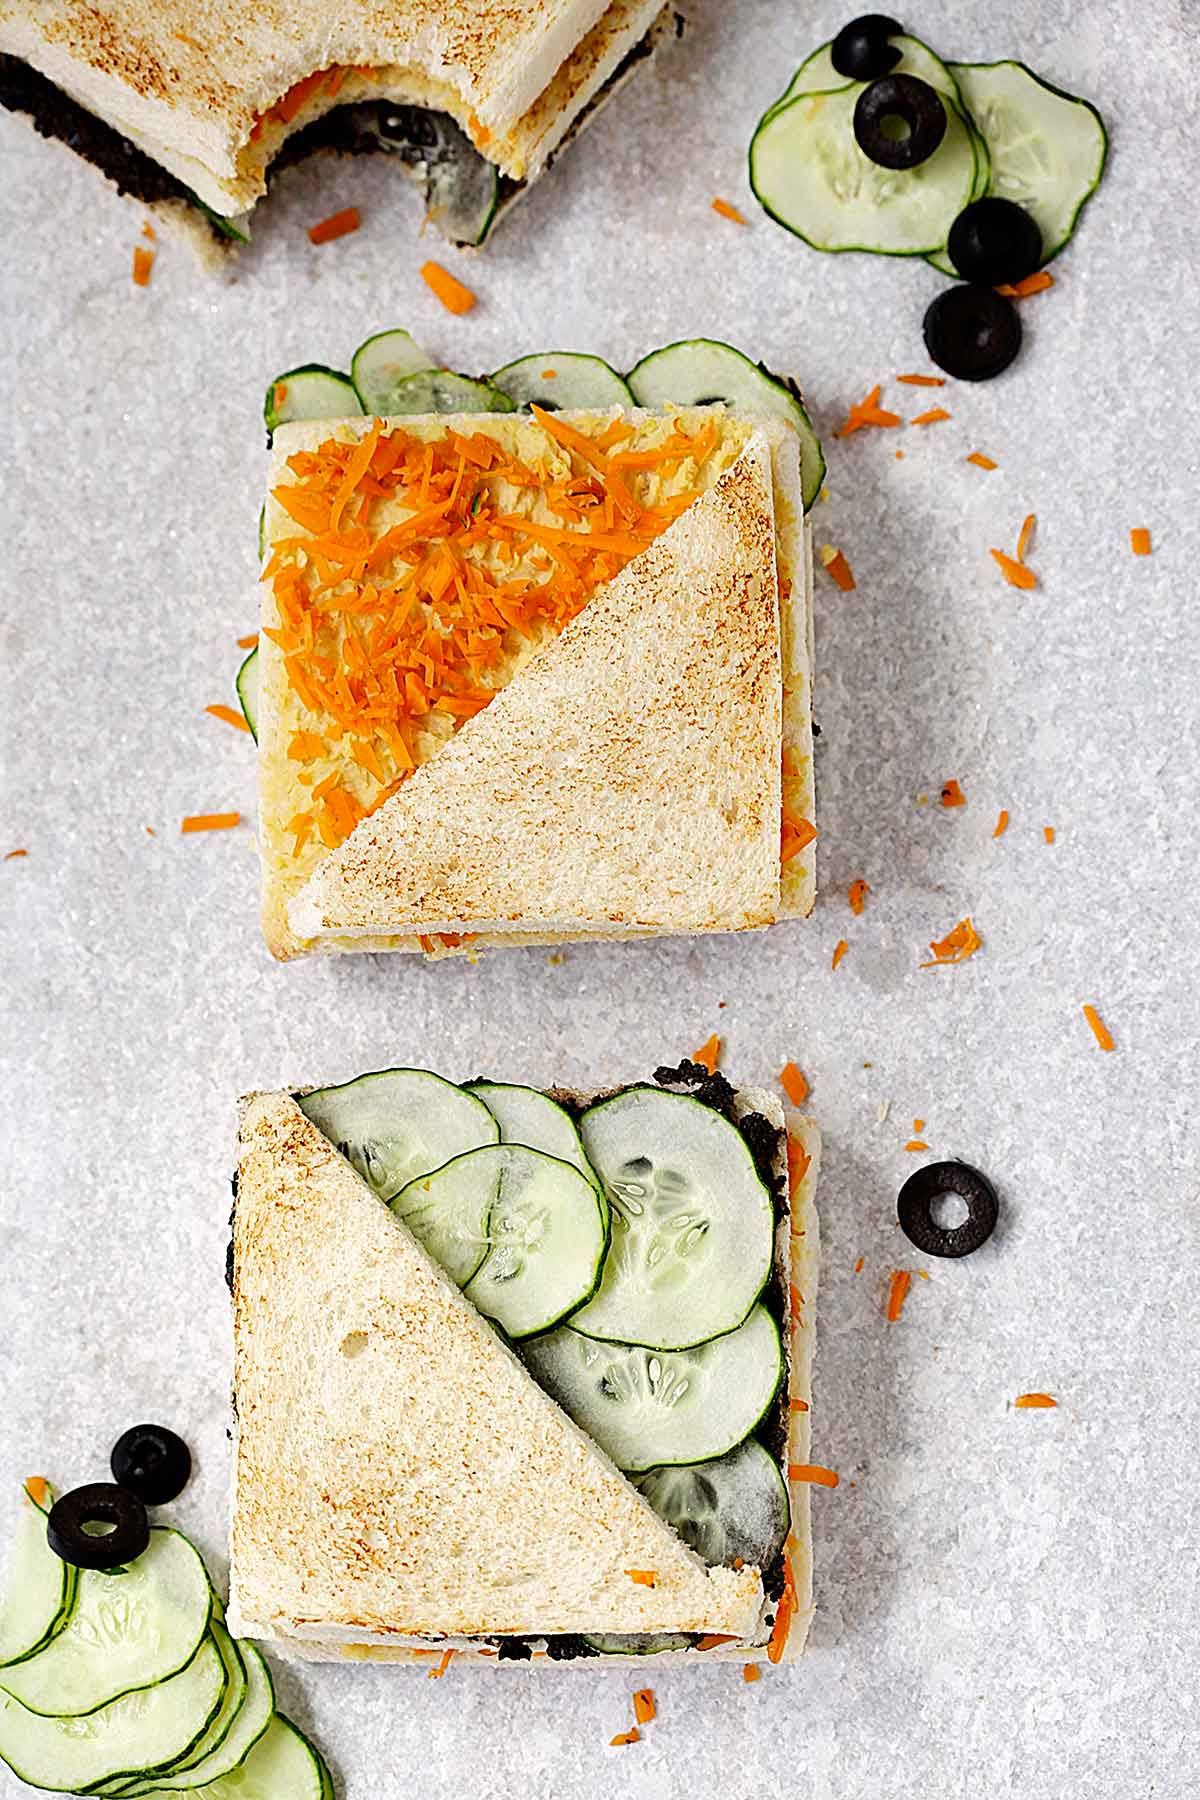 Pan de molde REBANADA GRANDE para sandwiches y tostadas- Receta ¡FÁCIL y  SANA! 100% vegano y SIN AMASAR